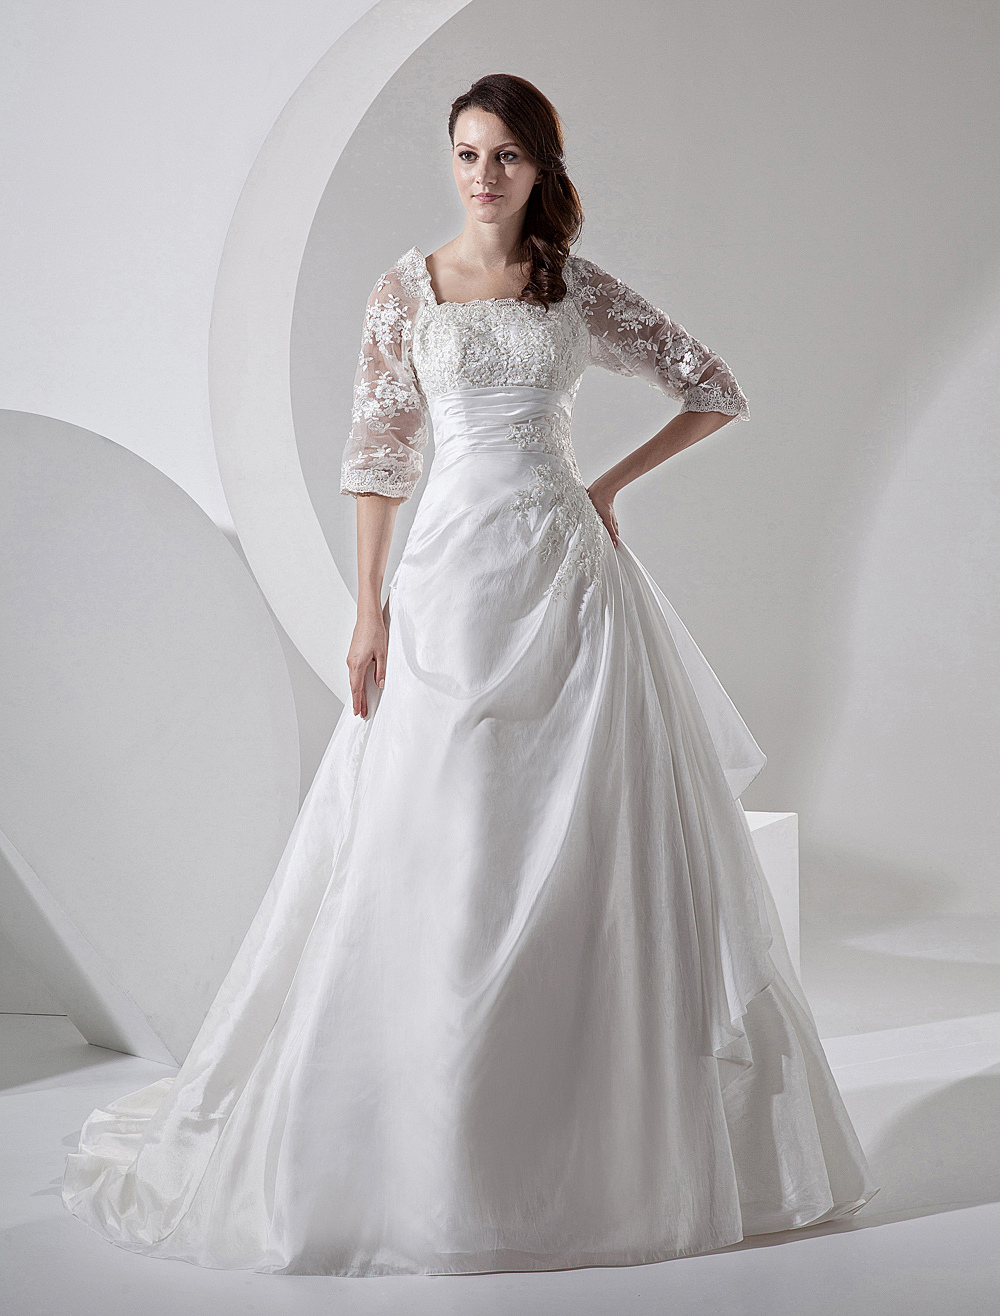 Court Train Ivory Bridal Wedding Dress with Square Neck - Milanoo.com